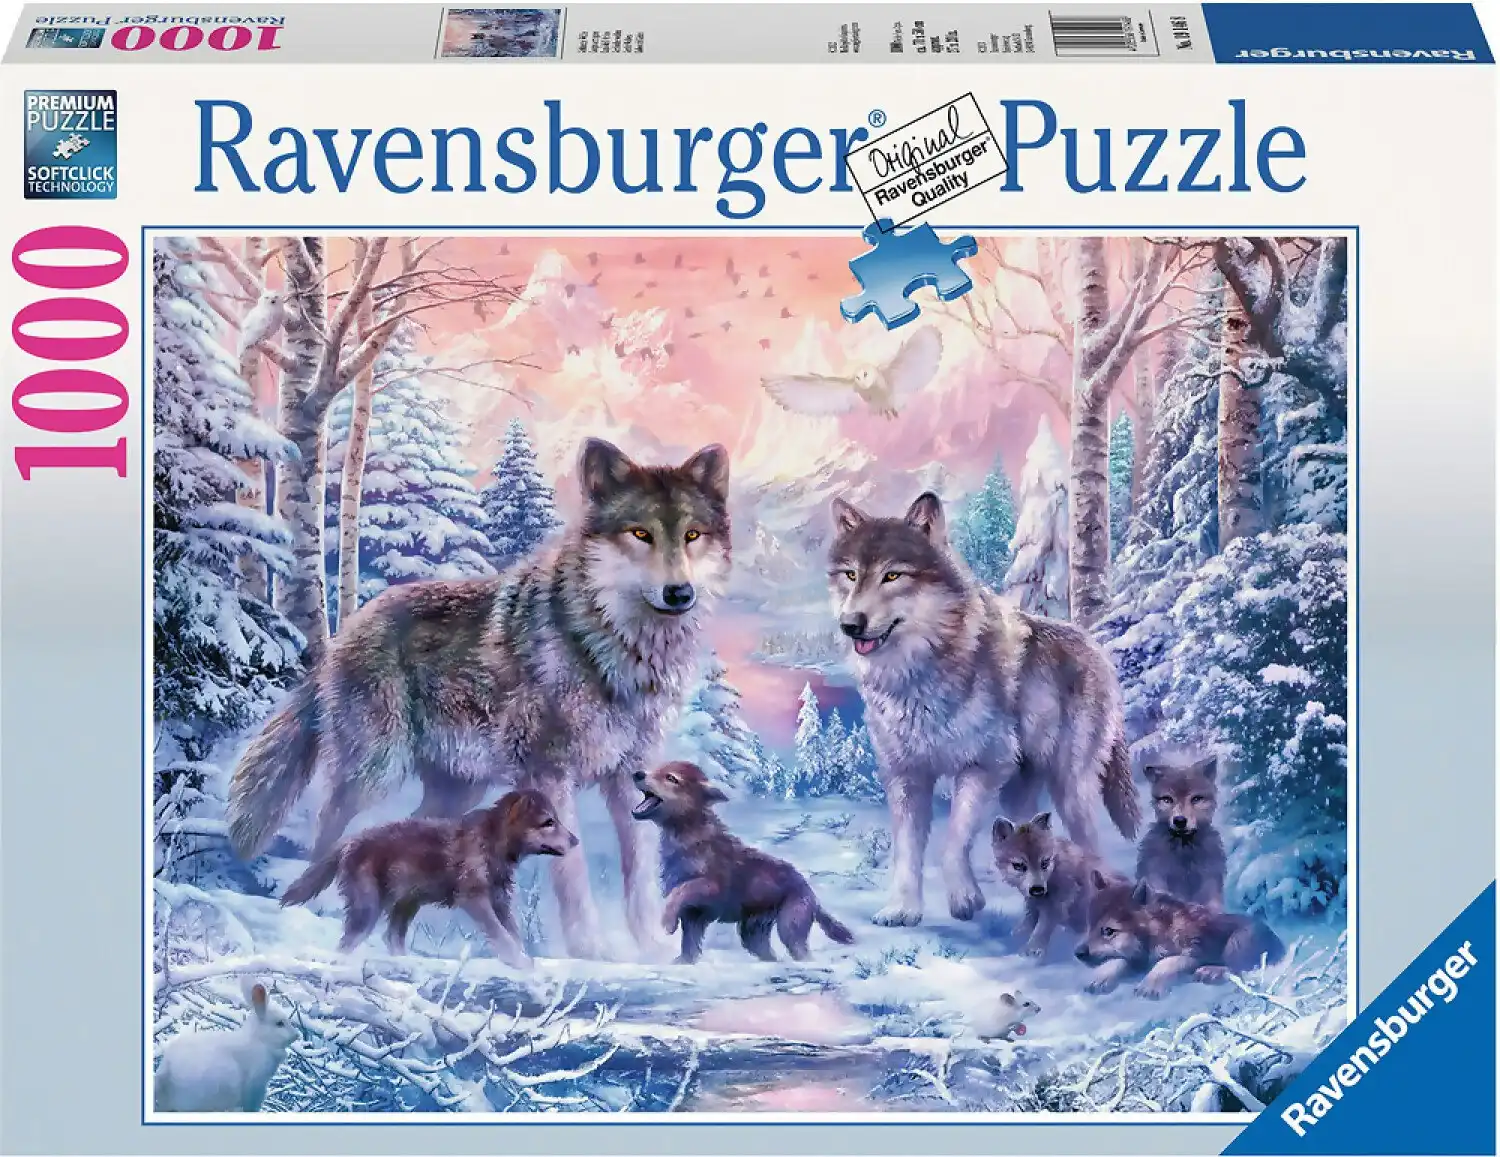 Ravensburger - Arctic Wolves Jigsaw Puzzle 1000 Pieces